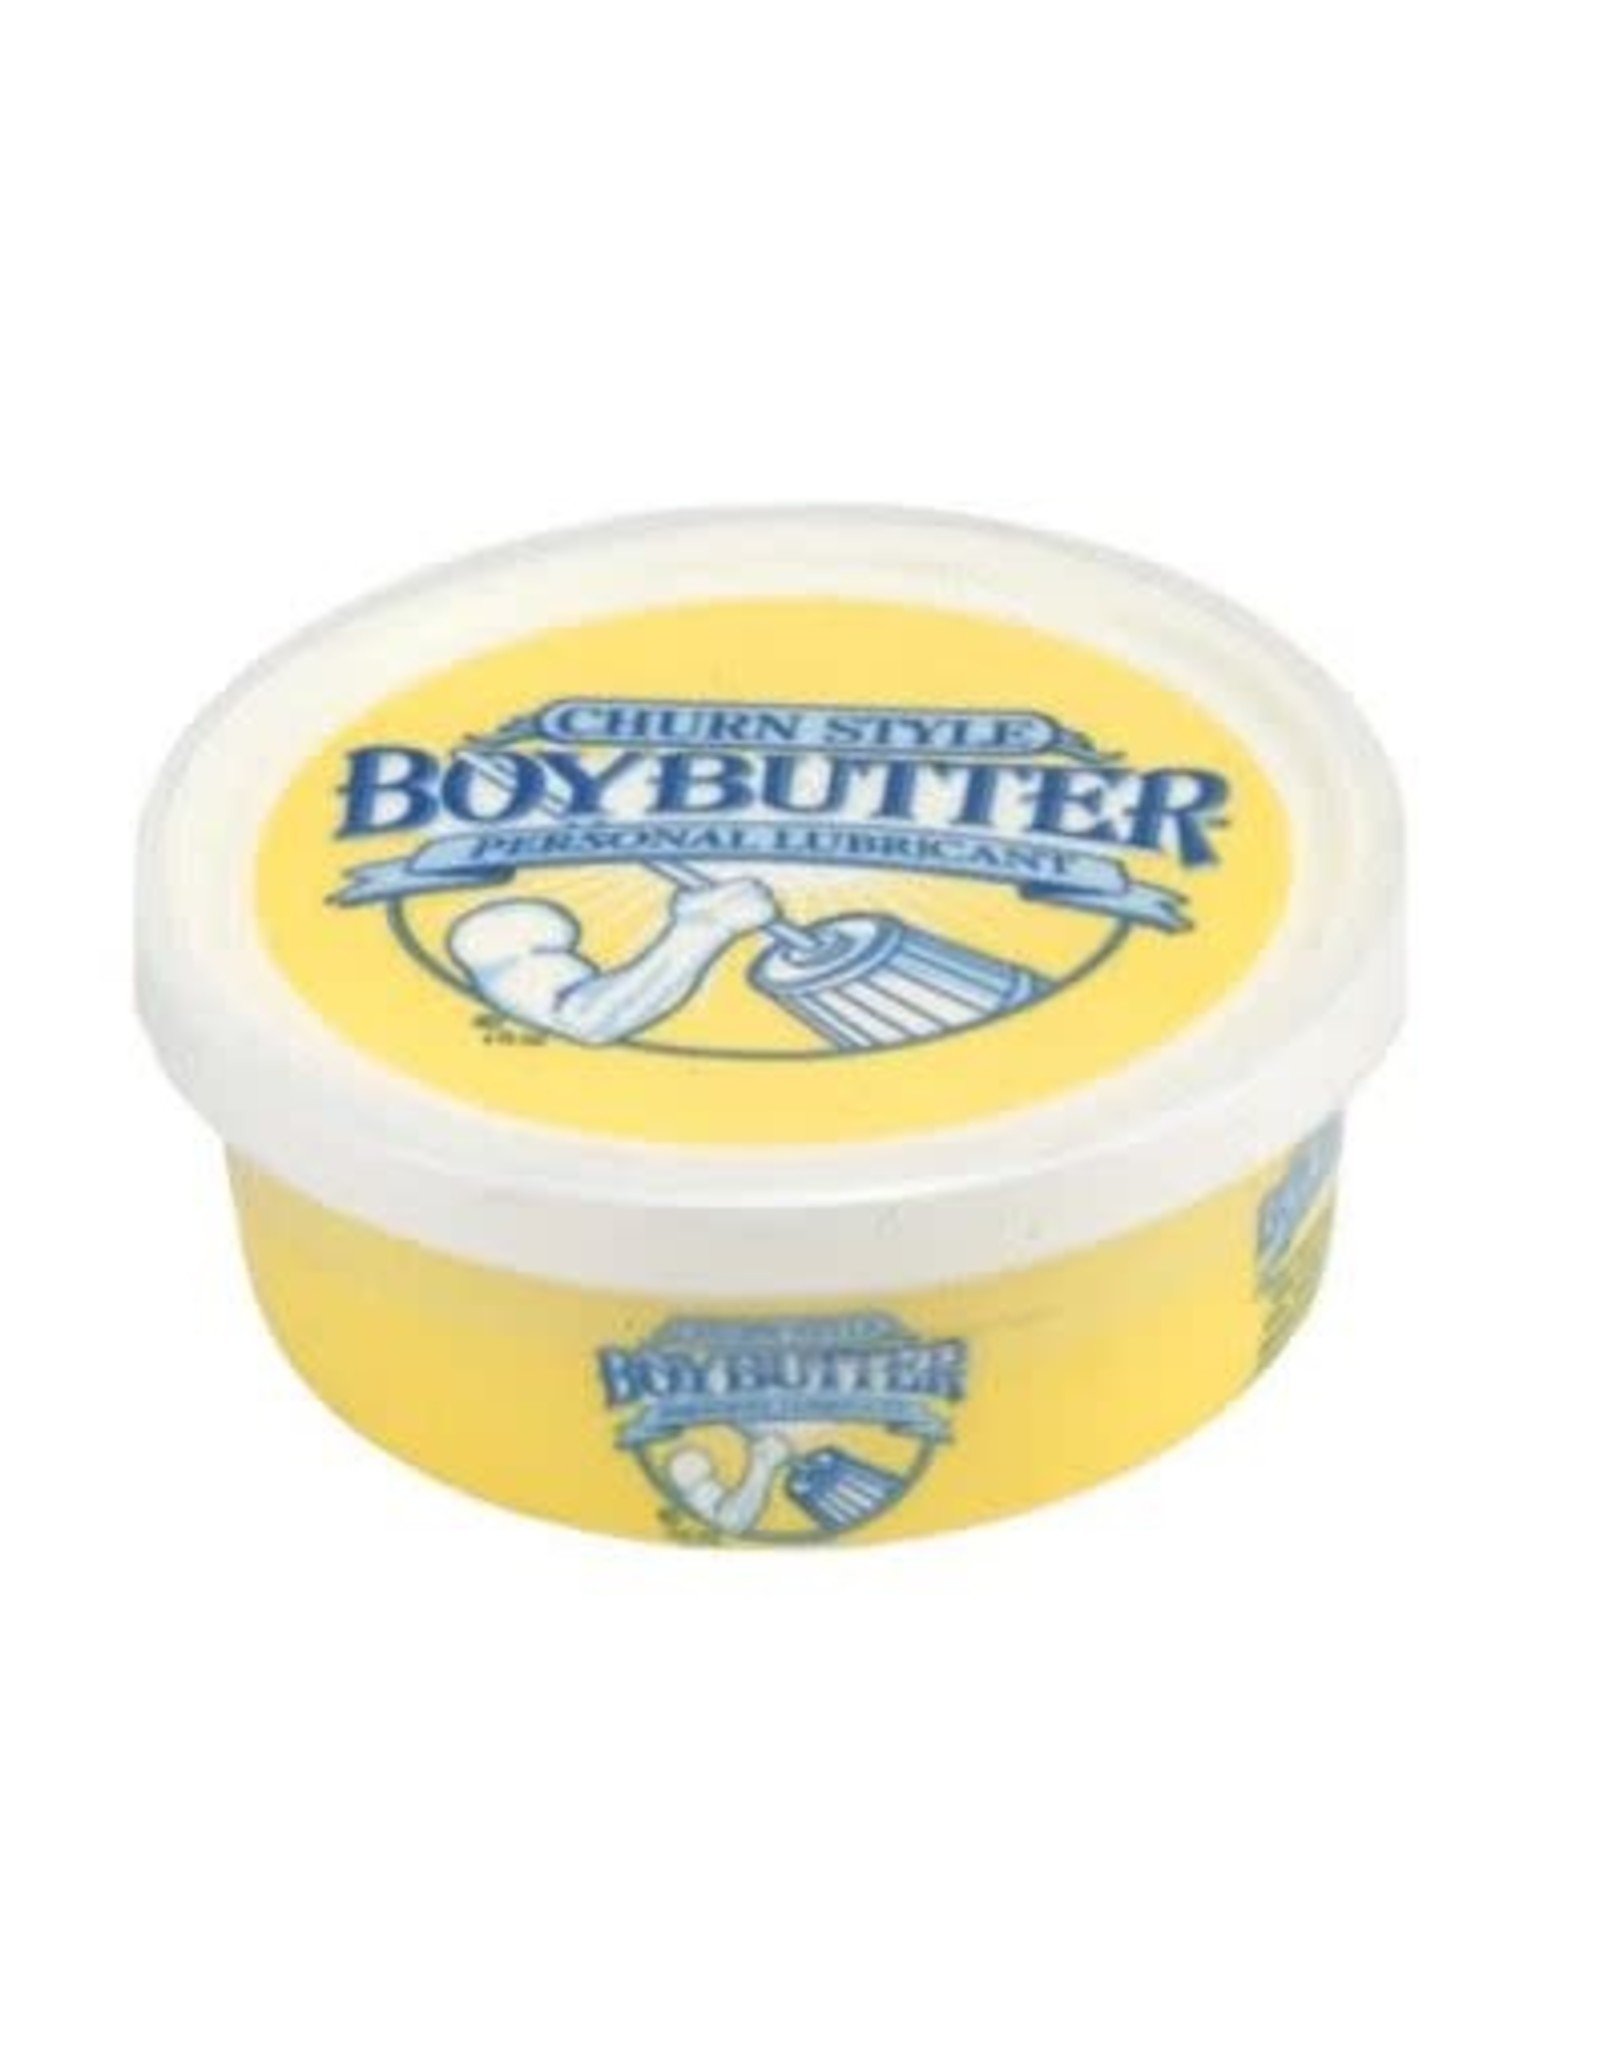 https://cdn.shoplightspeed.com/shops/630102/files/22408215/1600x2048x2/boy-butter-boy-butter-original.jpg